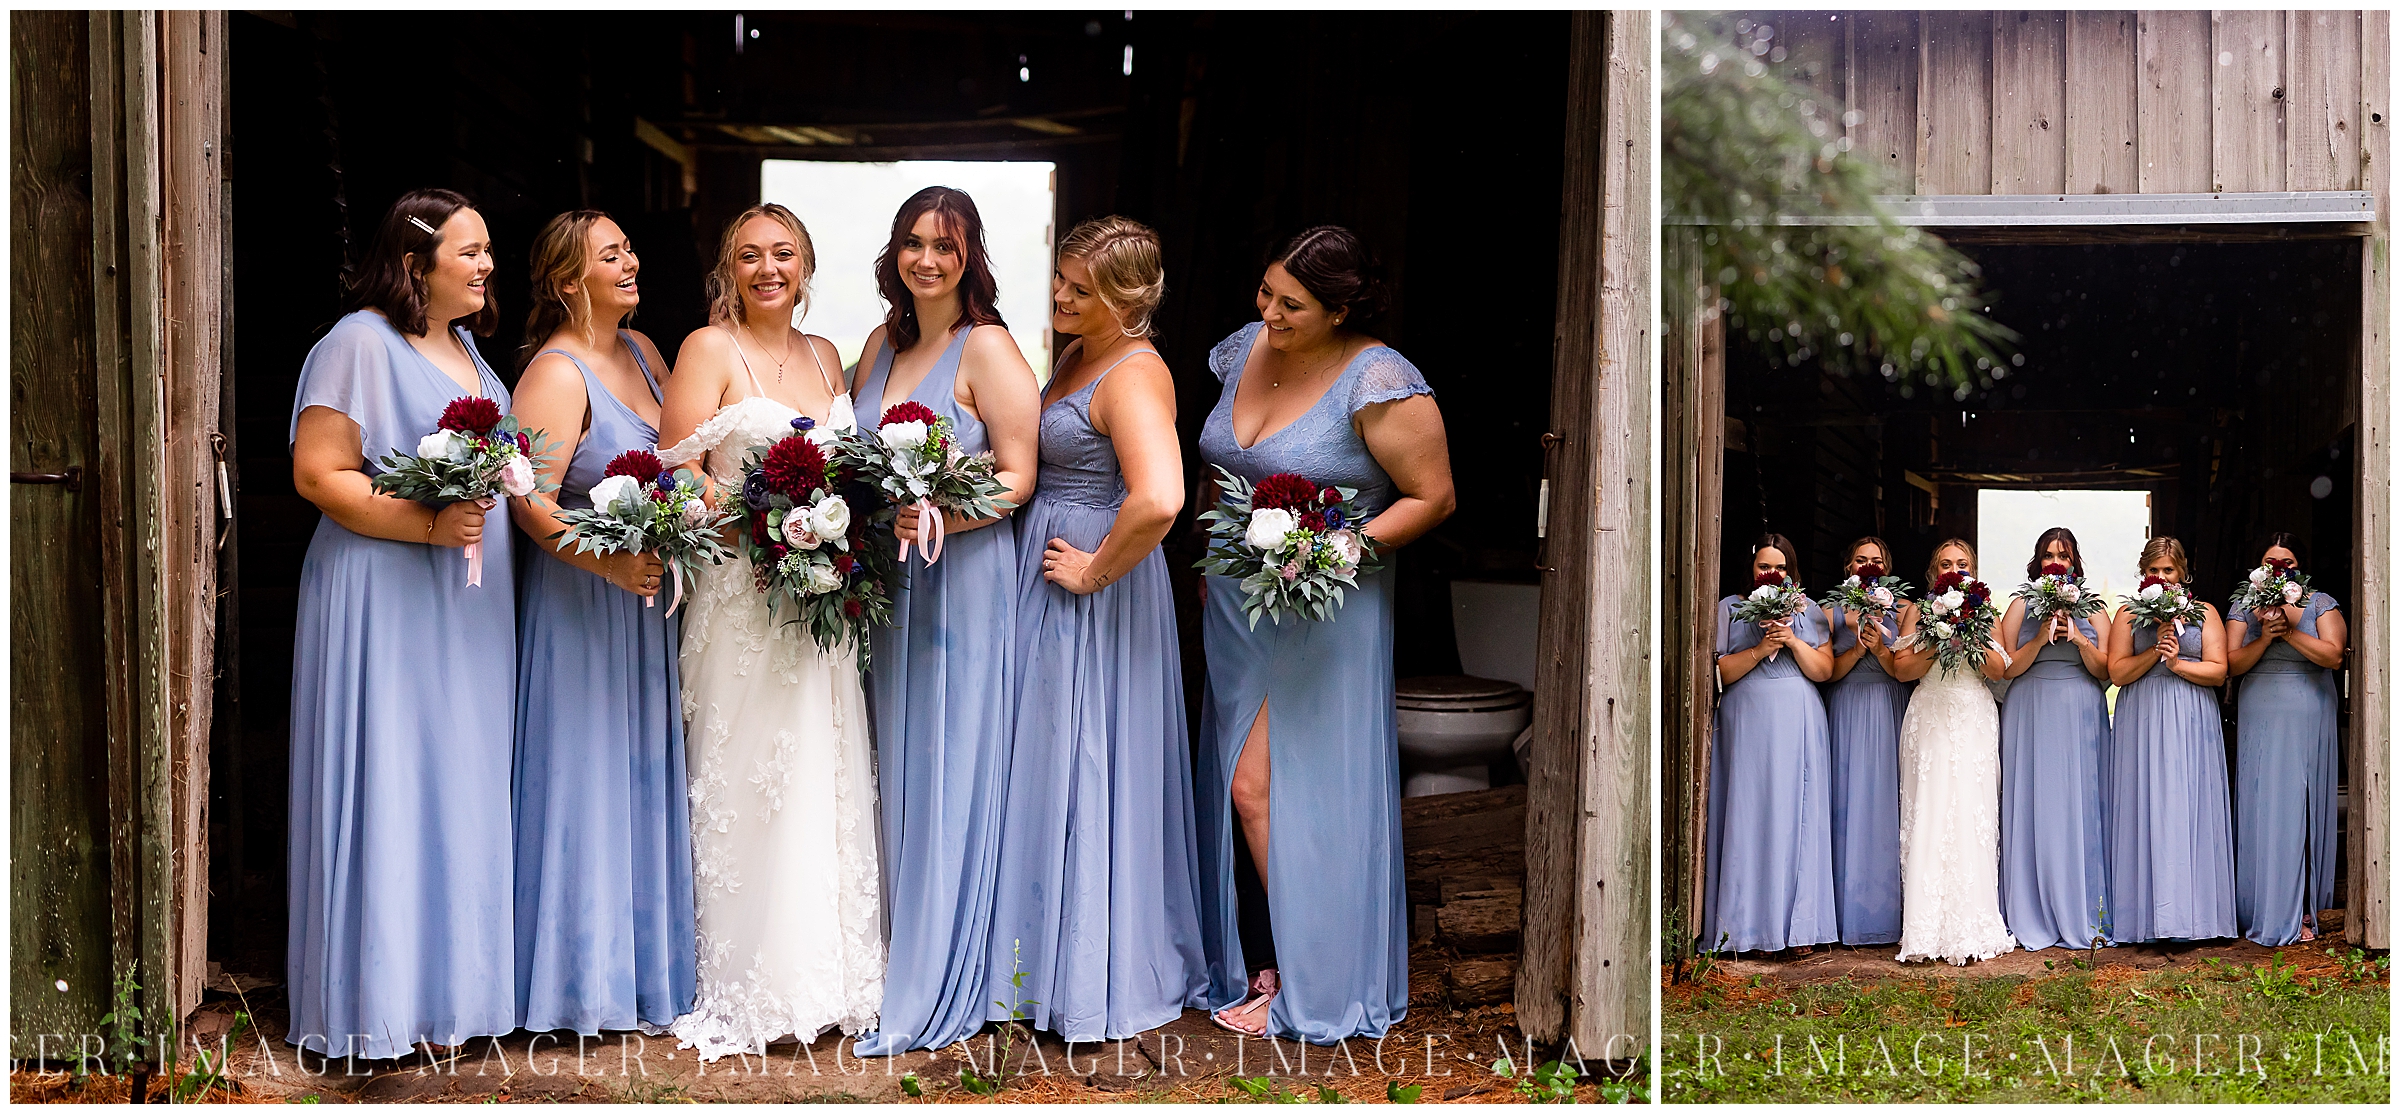 memorial-day-wedding-barn-dress-bride-dusty-blue